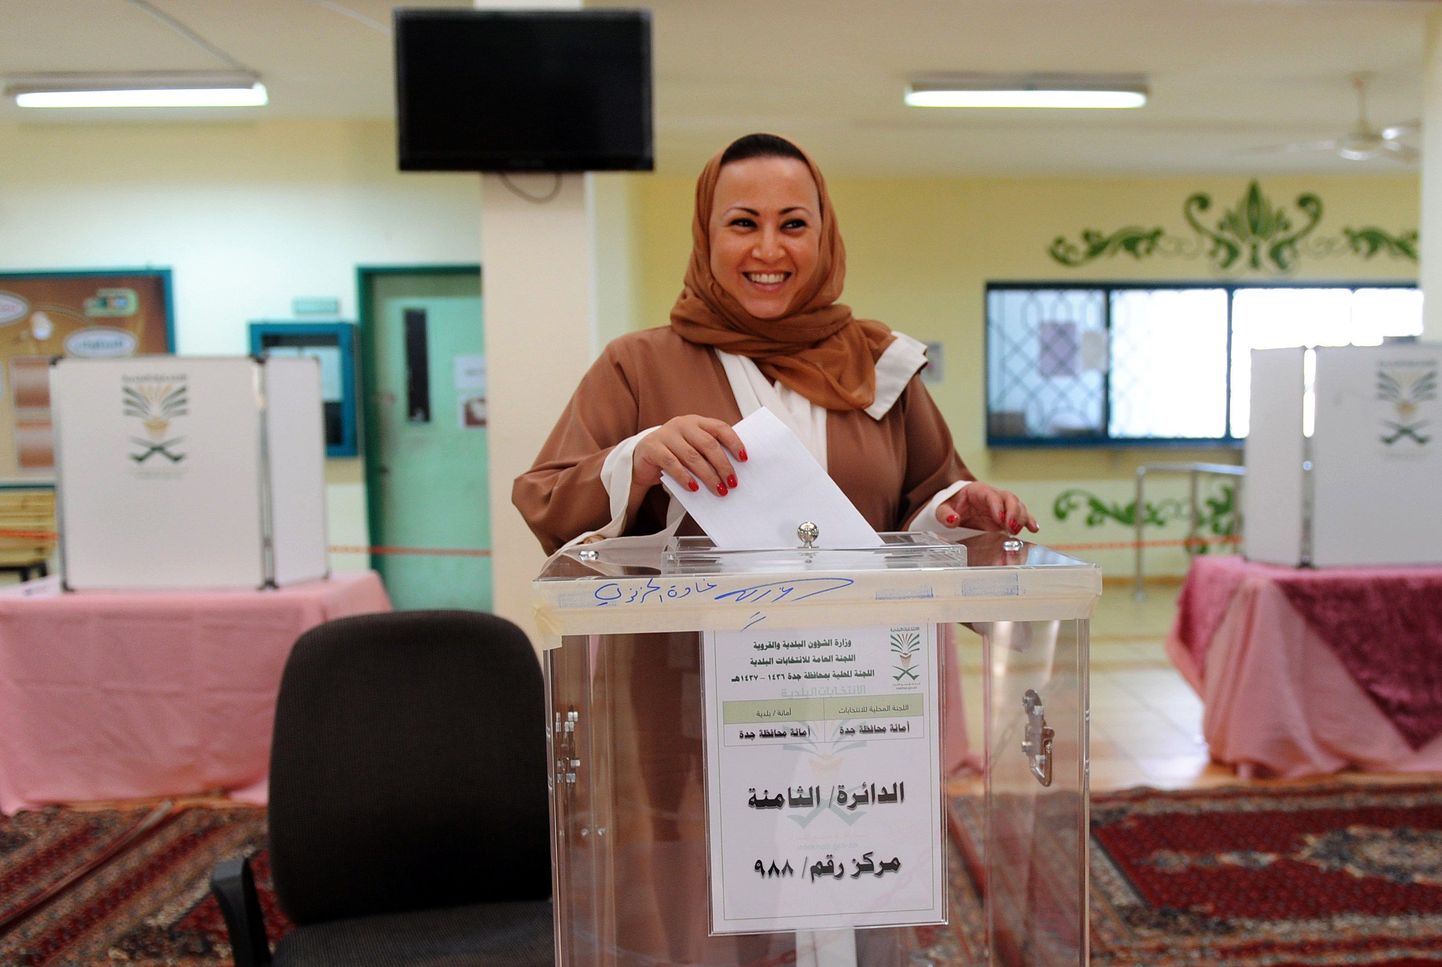 В Саудовской Аравии в субботу прошли муниципальные выборы, в которых впервые в истории страны могут участвовать женщины.